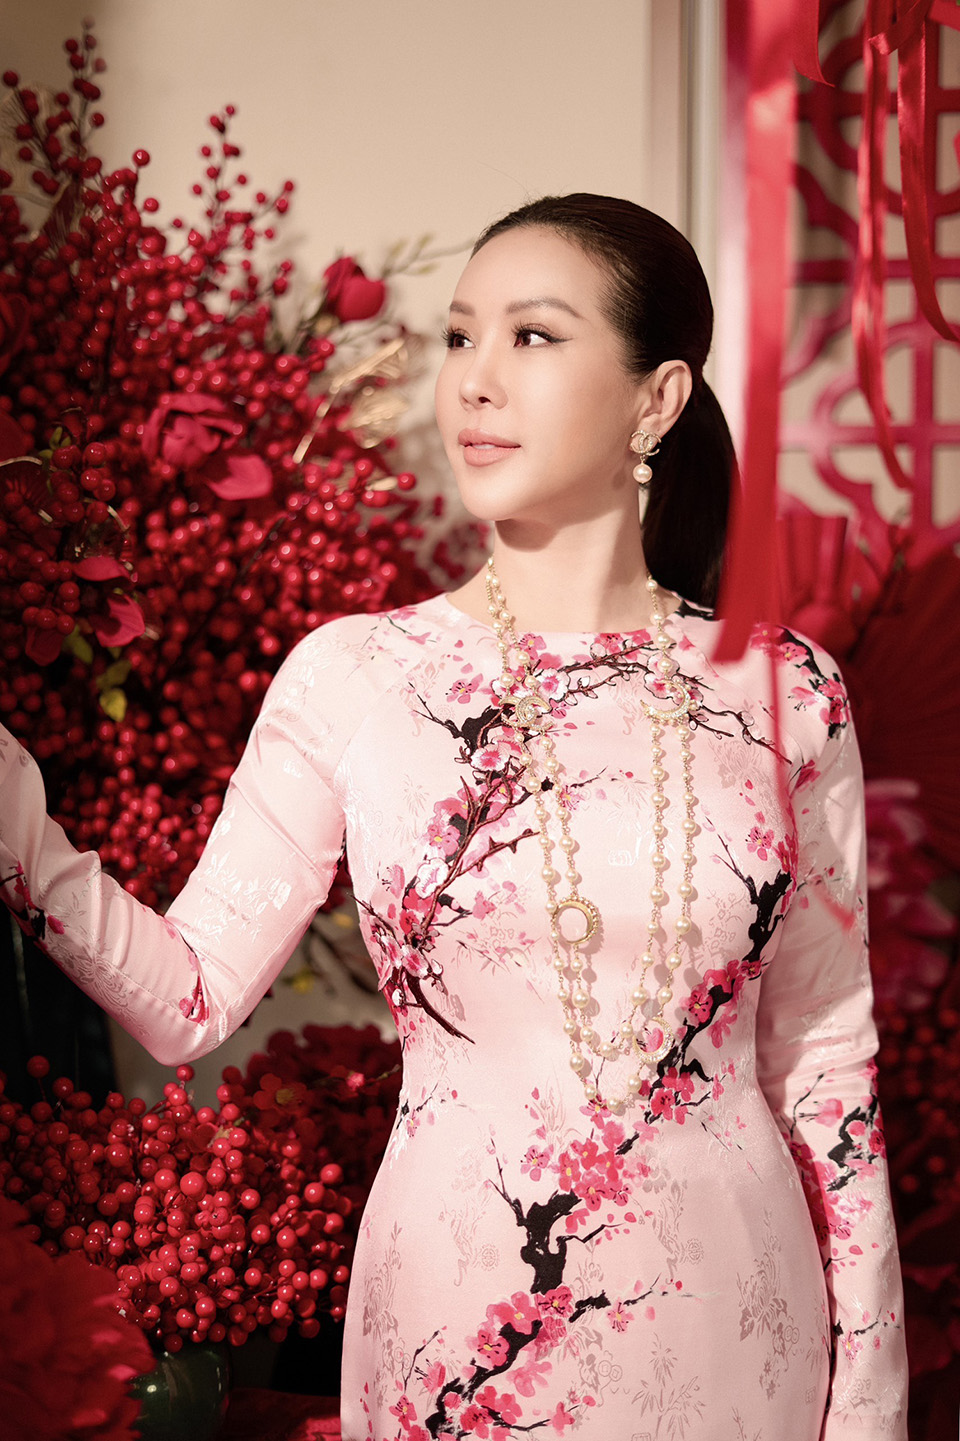 Nhan sắc của Hoa hậu Thu Hoài ở tuổi 47 khiến khán giả trầm trồ - 2